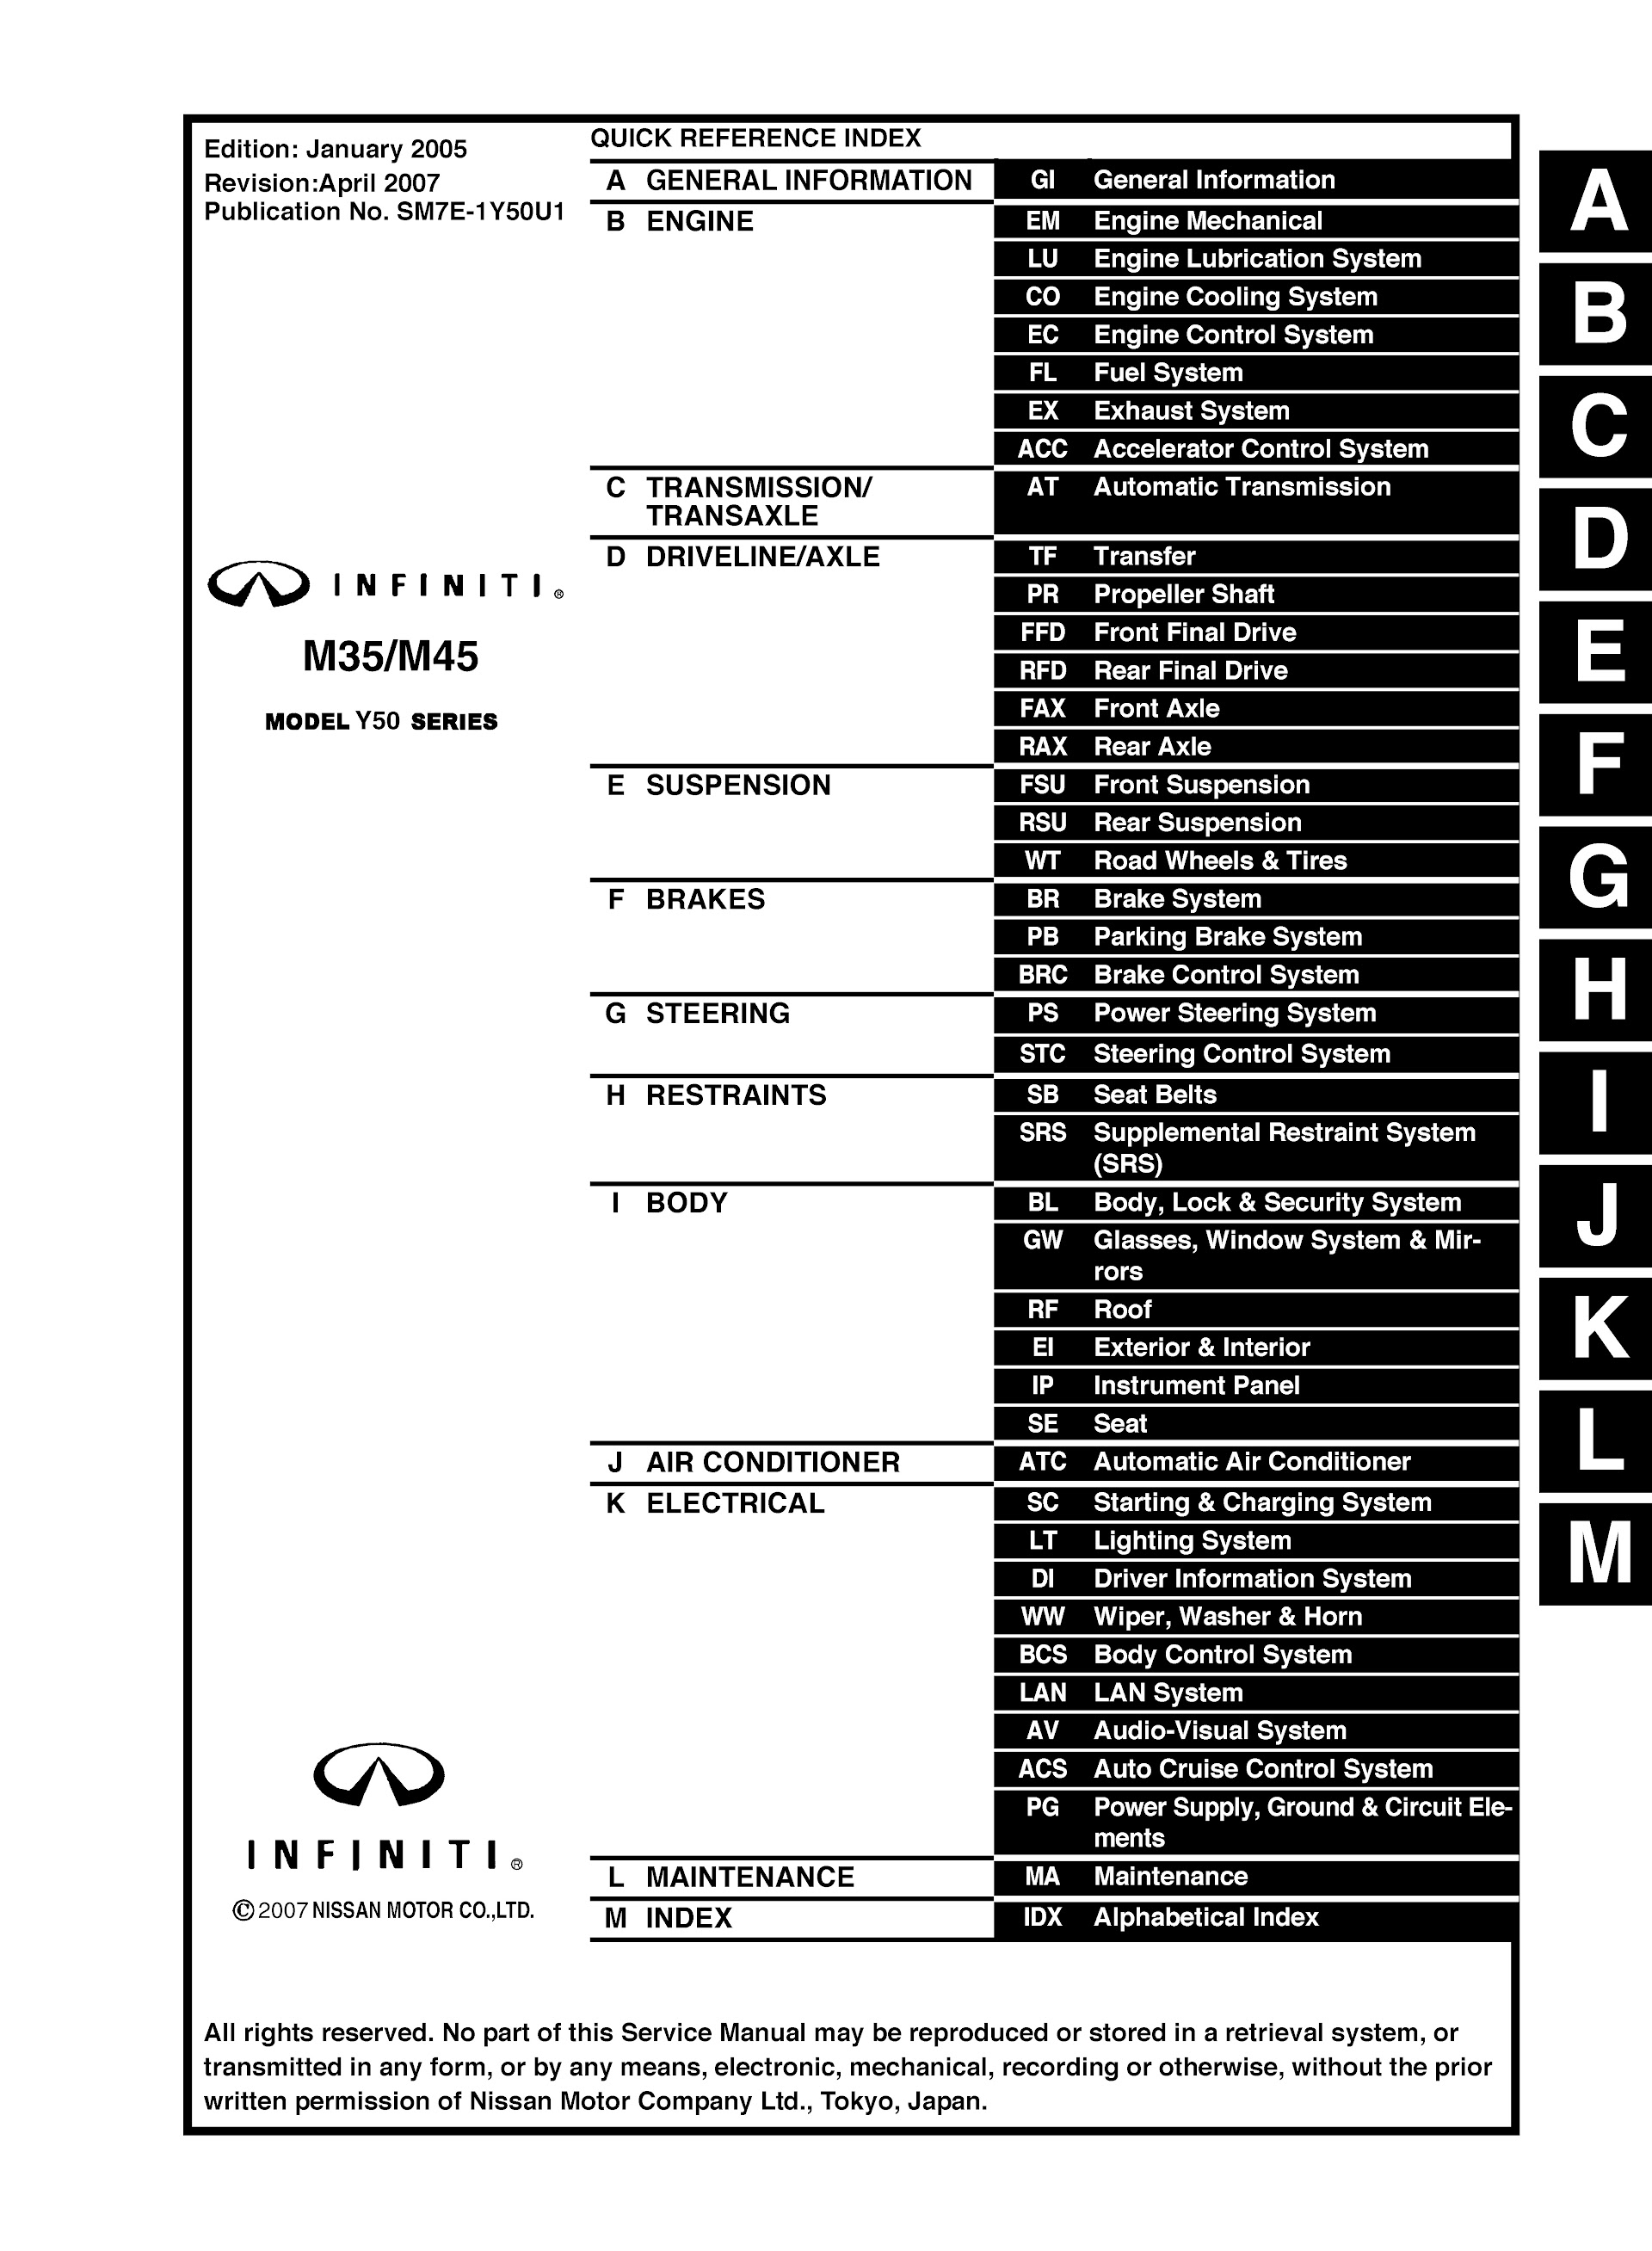 Table of Contents 2003-2007 Infiniti Repair Manual M45/M35 Model Y50 Series